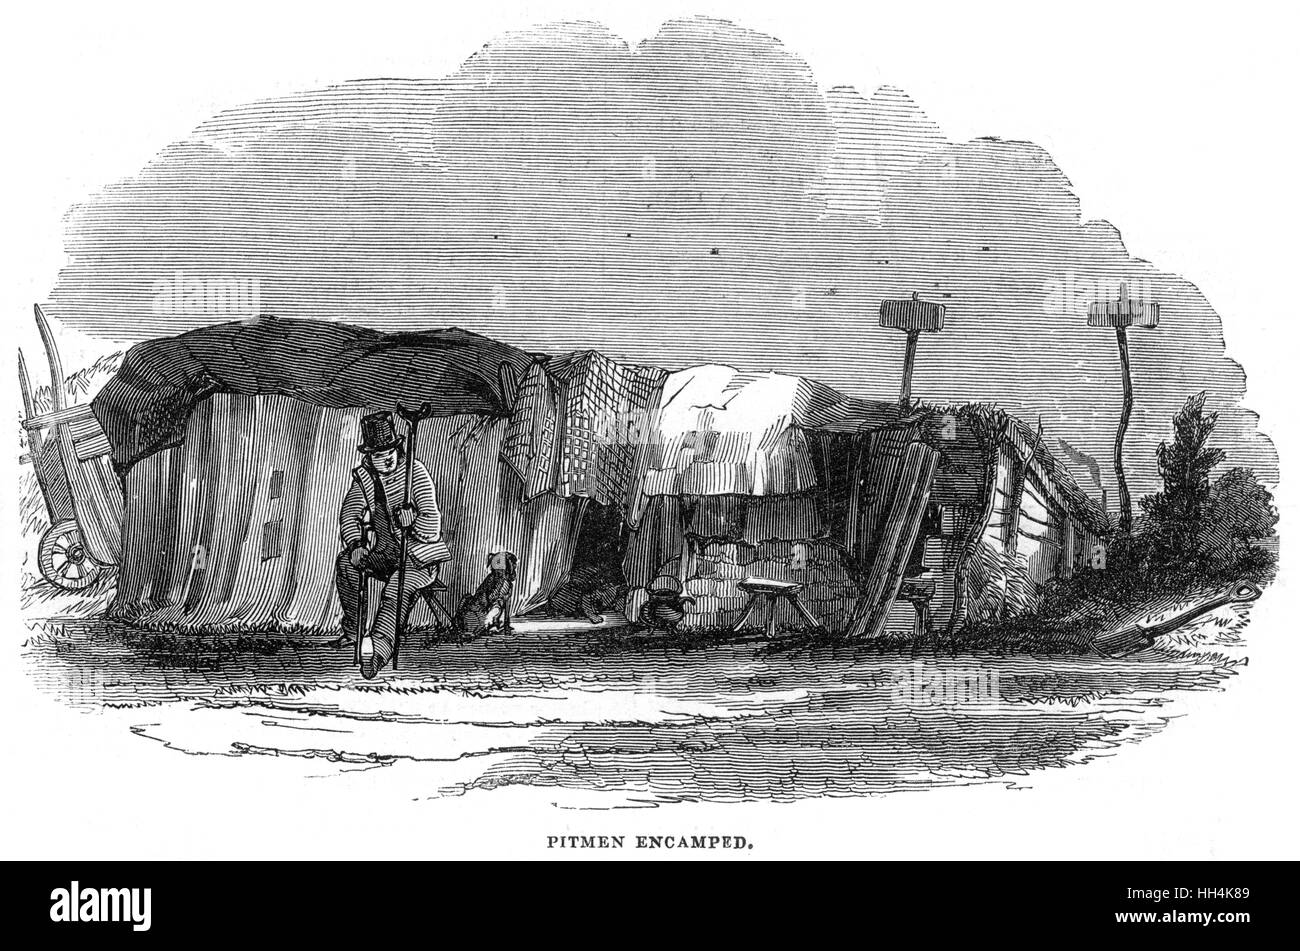 Pitmen im Lager - räumte Kohlebergarbeiter und seine Wohnung Stockfoto